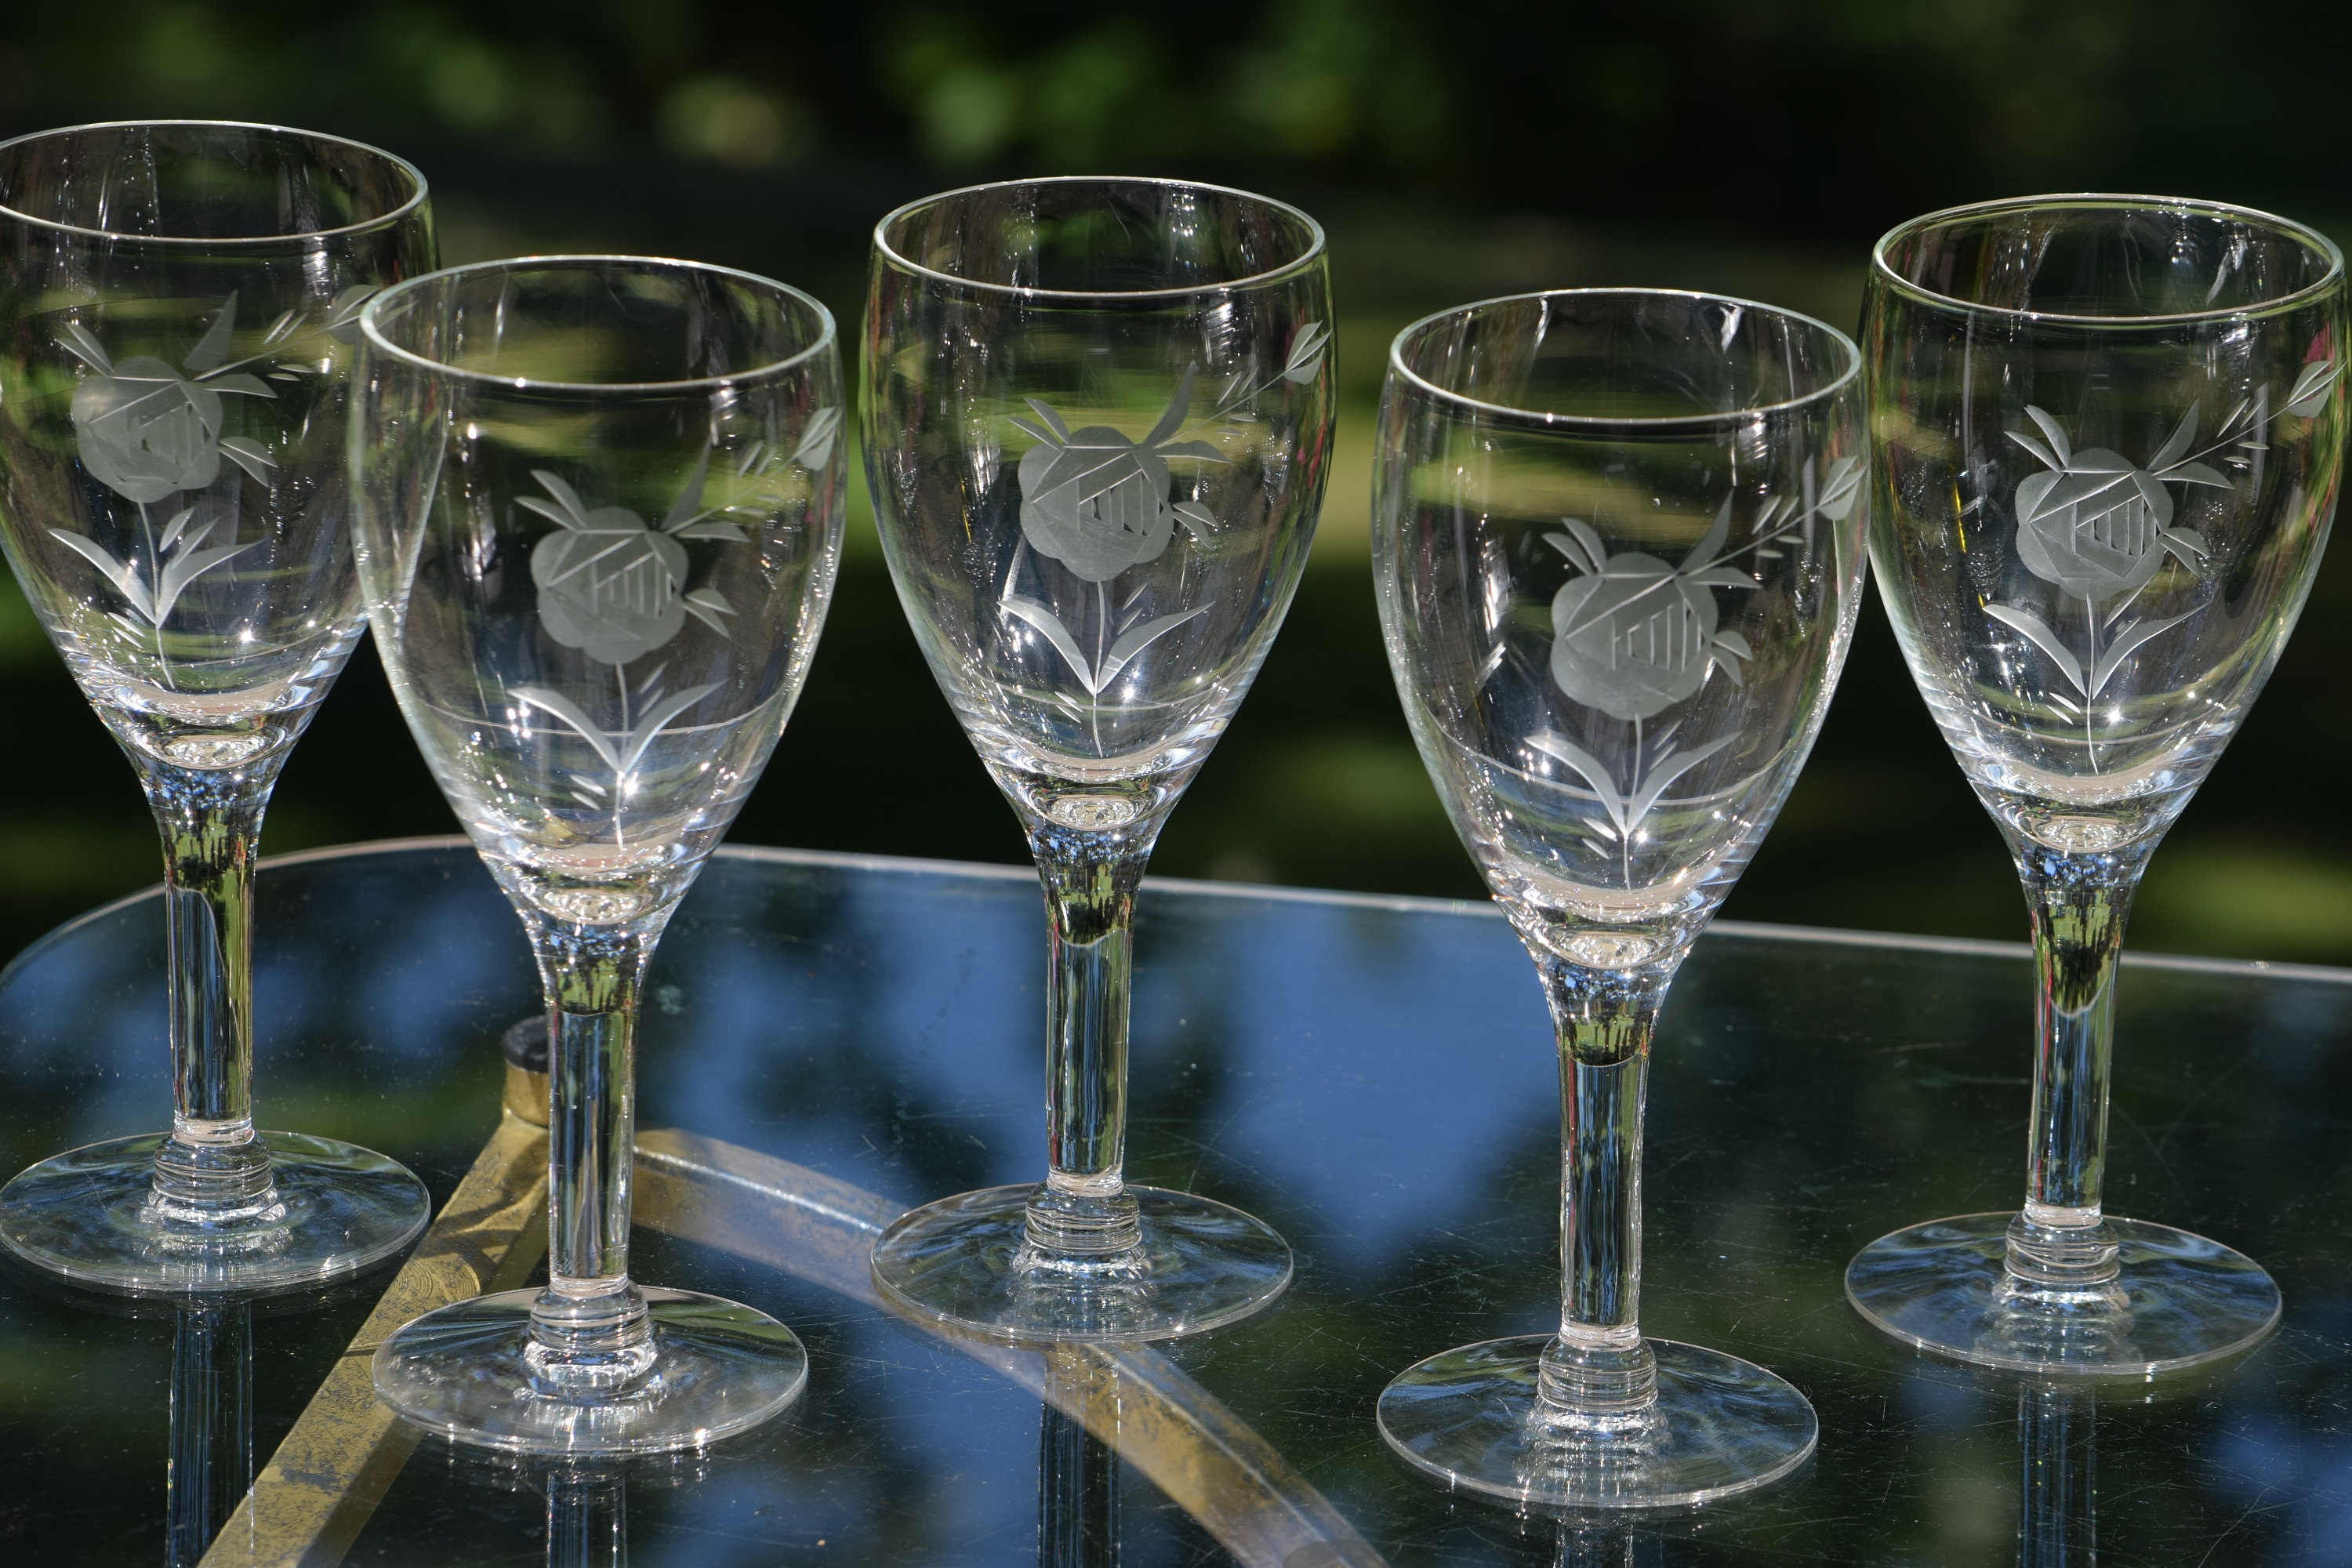 6 Vintage Rose Etched Wine Glasses, circa 1950's, Vintage Etched